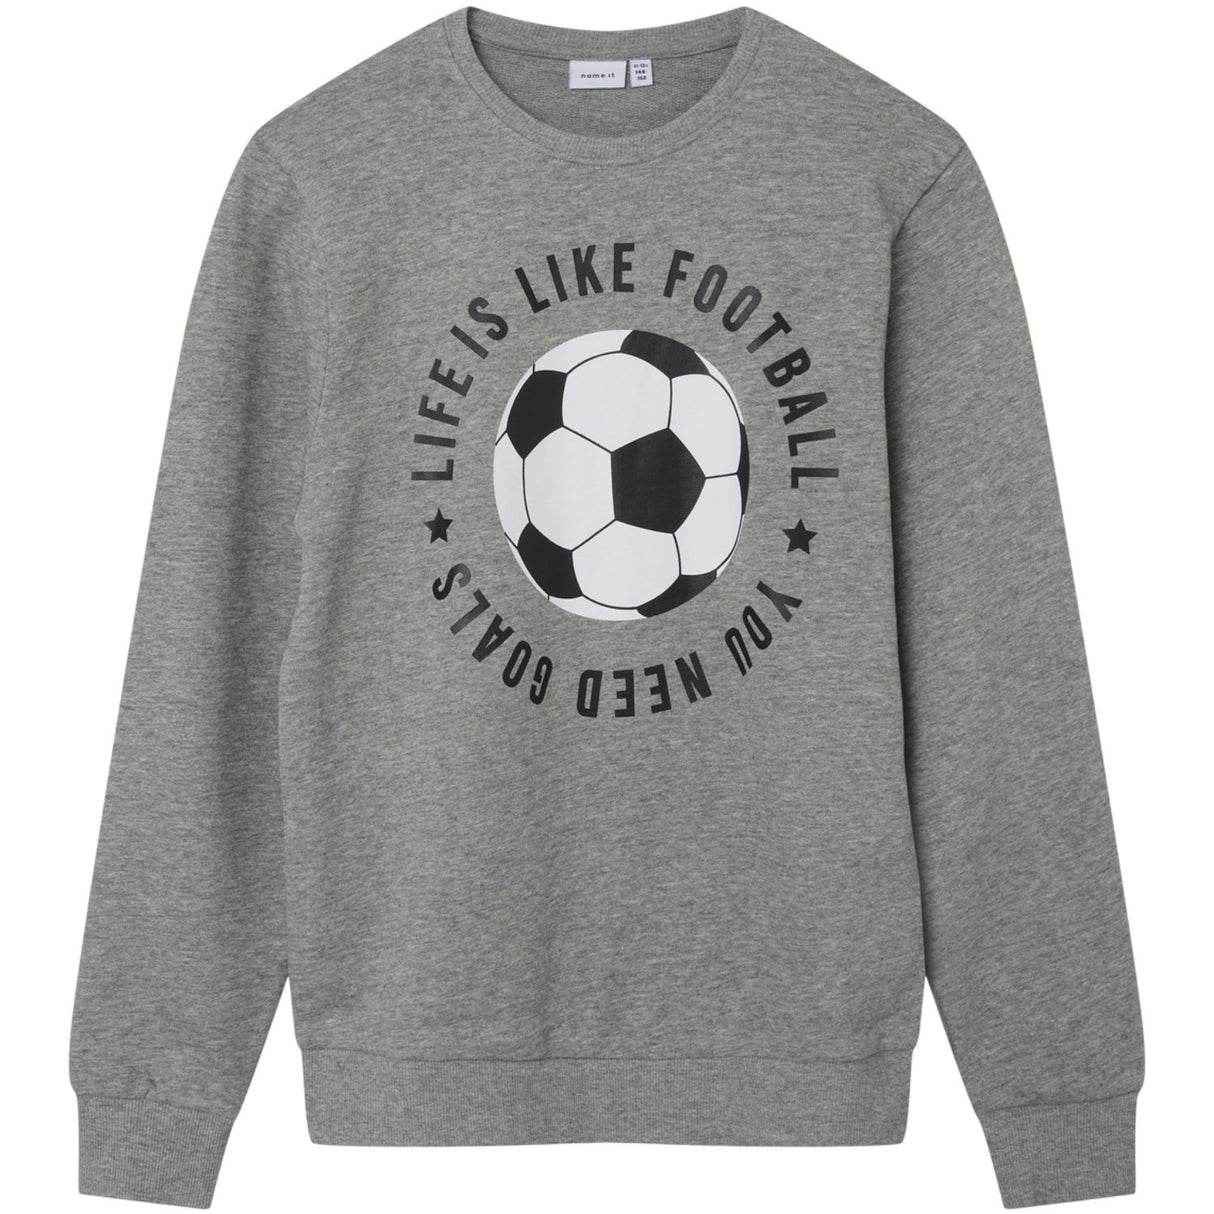 Name It Grey Melange Jefootball Sweatshirt